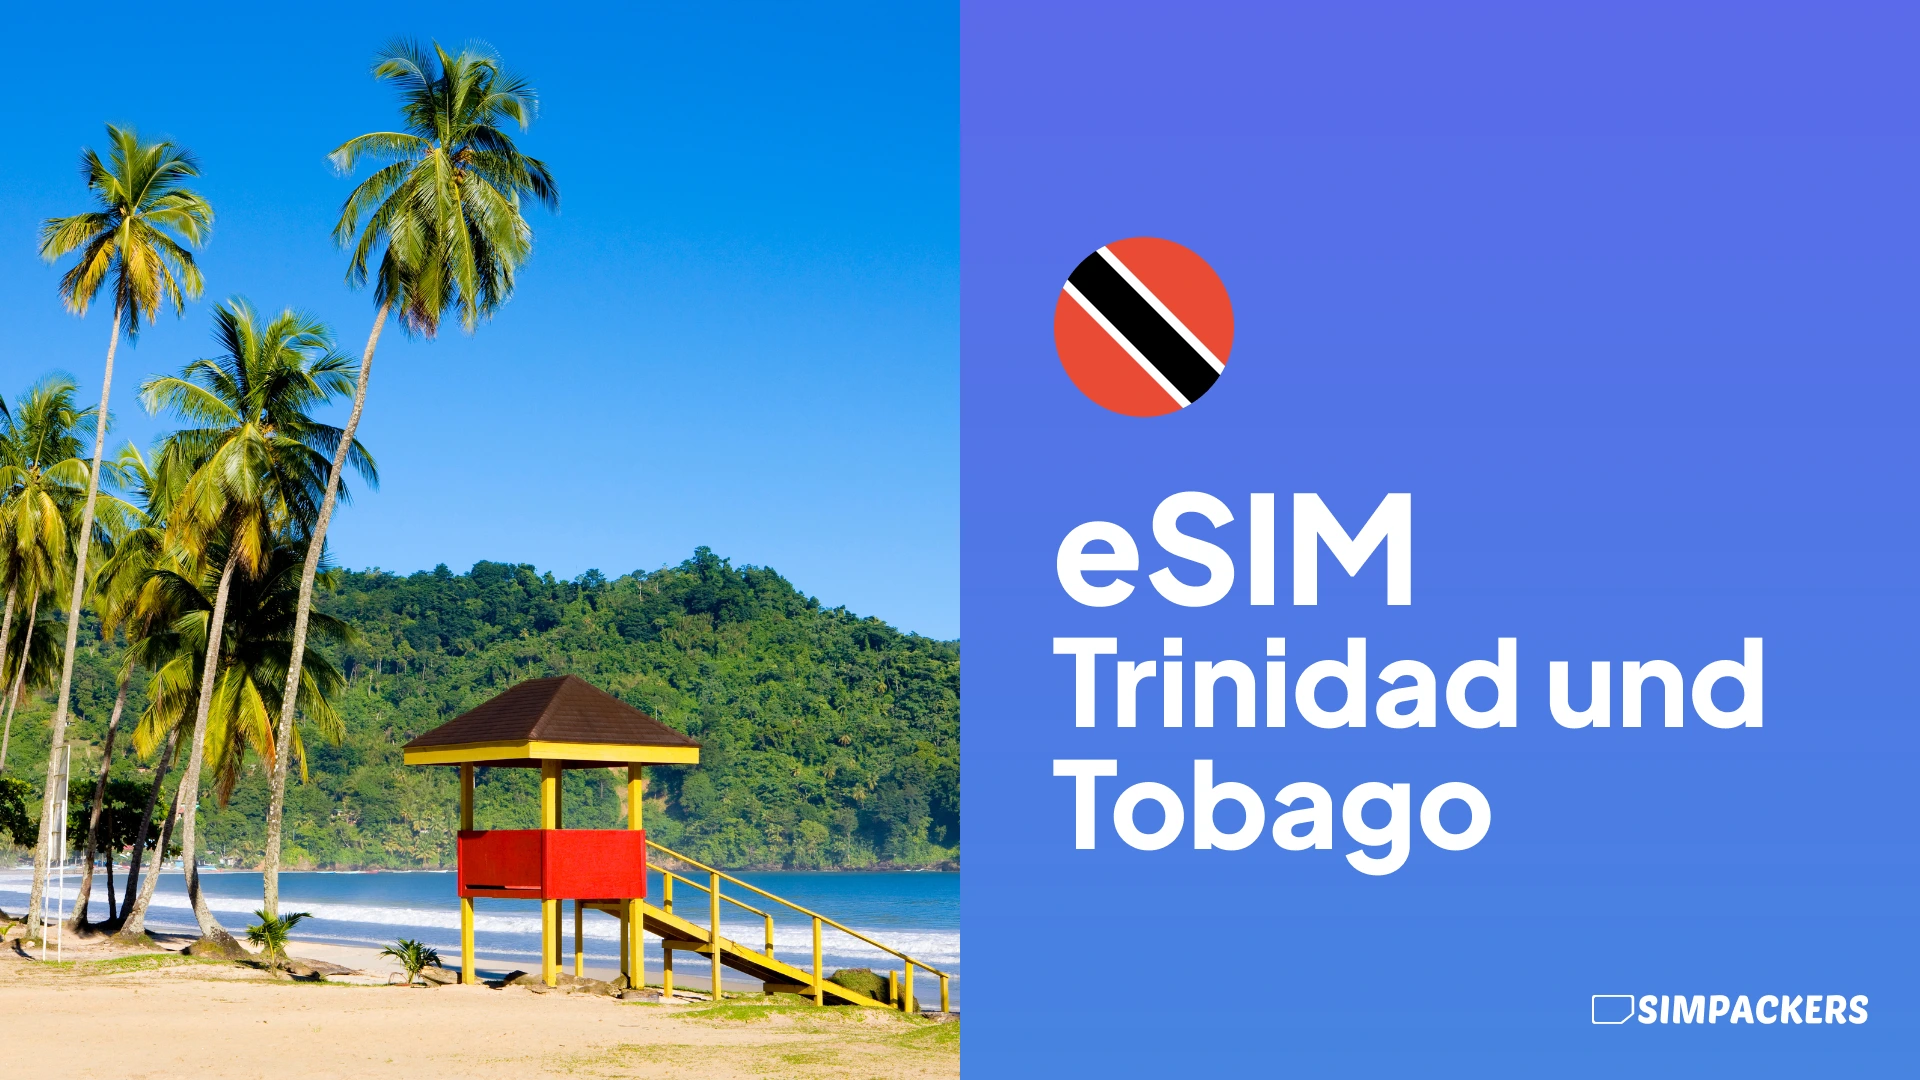 DE/FEATURED_IMAGES/esim-trinidad-und-tobago.webp